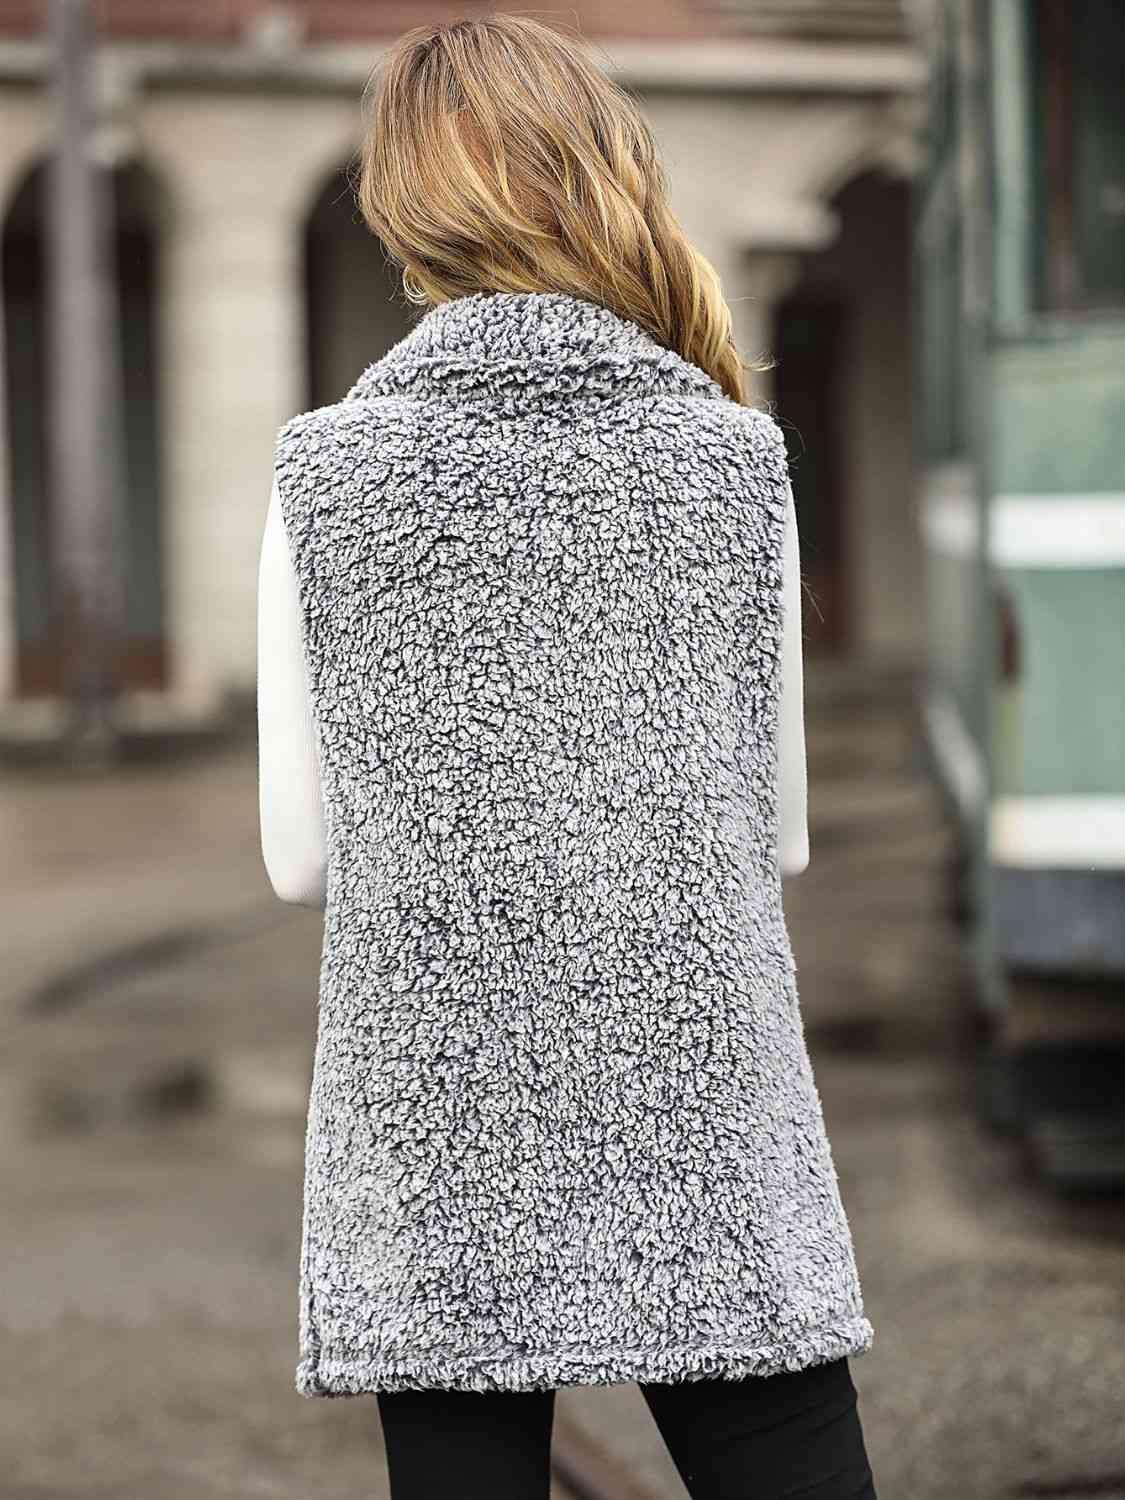 a woman is walking down the street wearing a coat